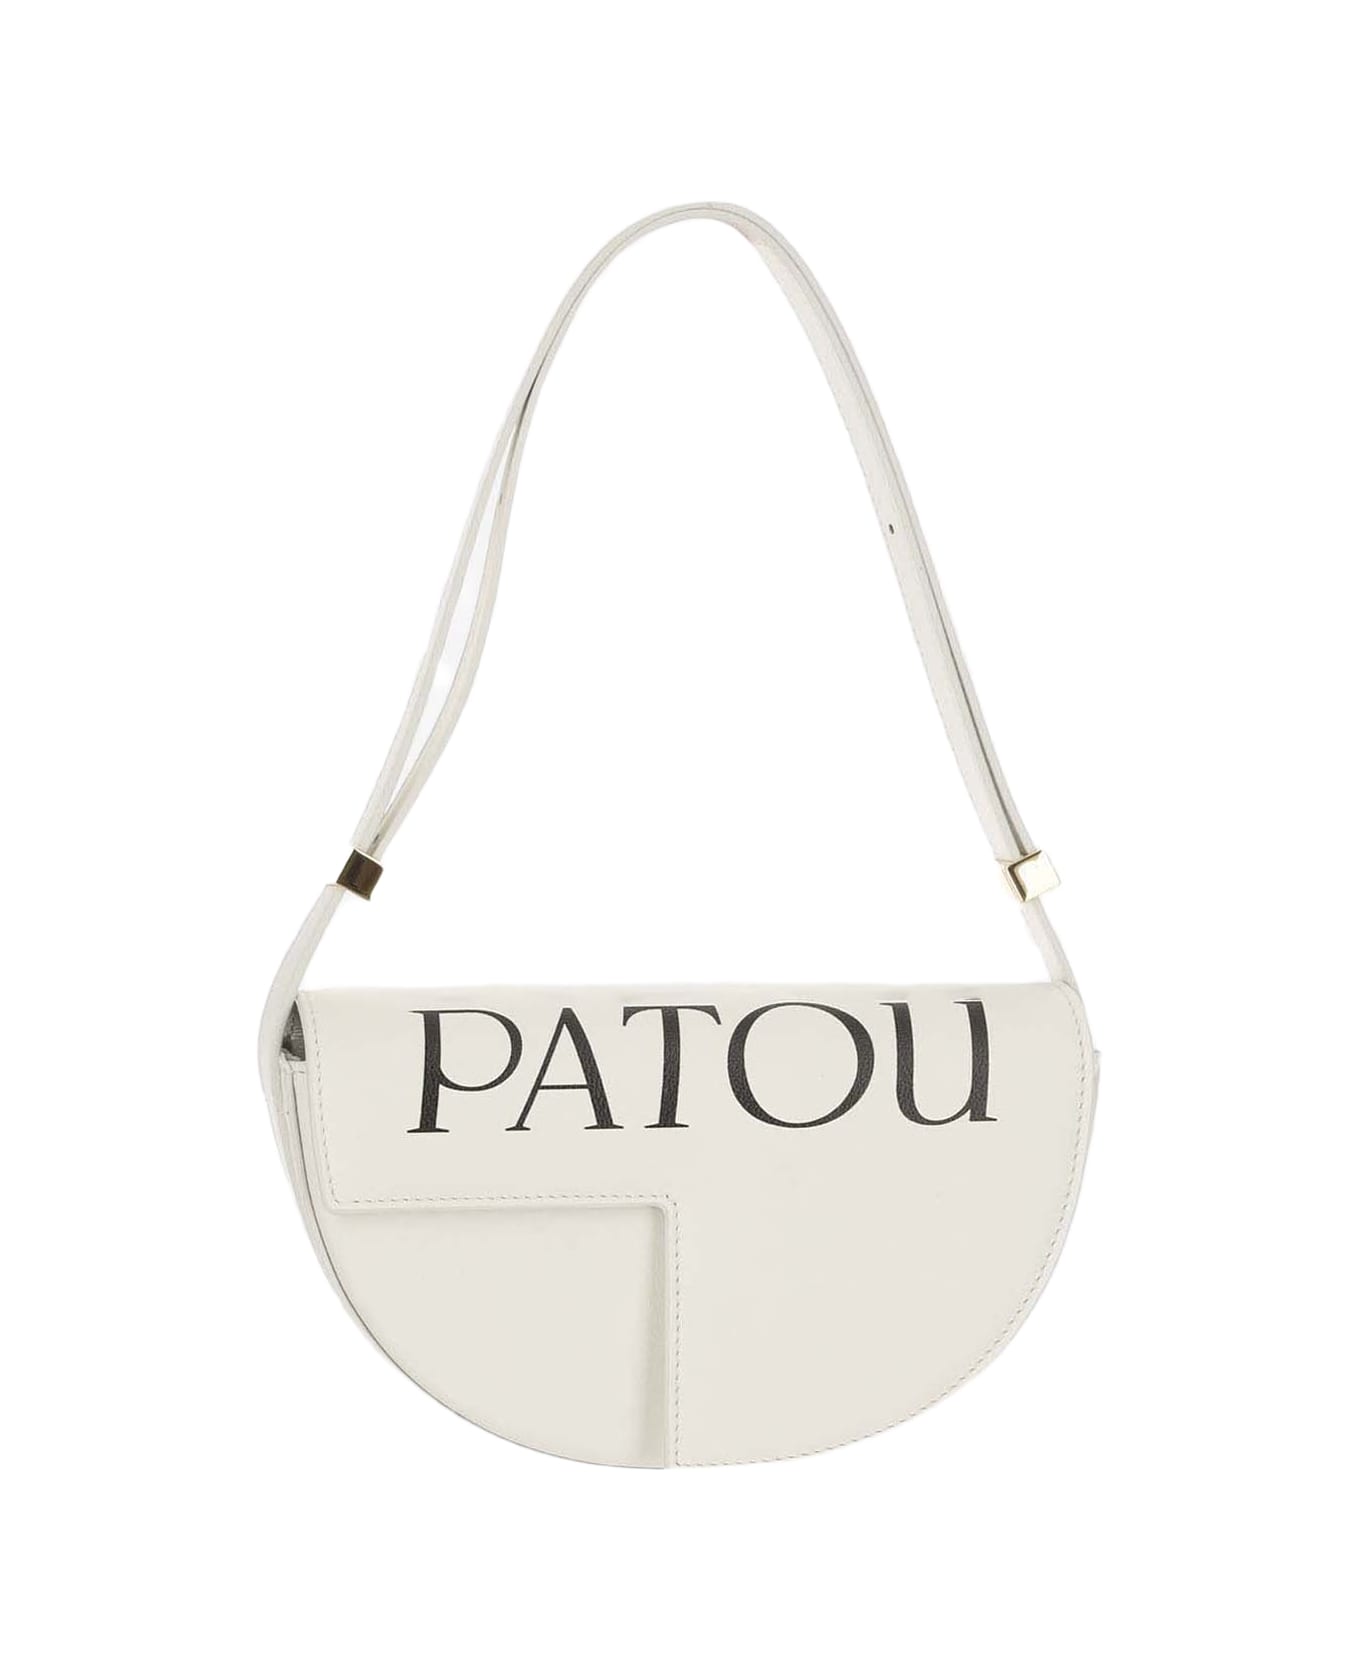 Patou Le Petit Patou Bag - White